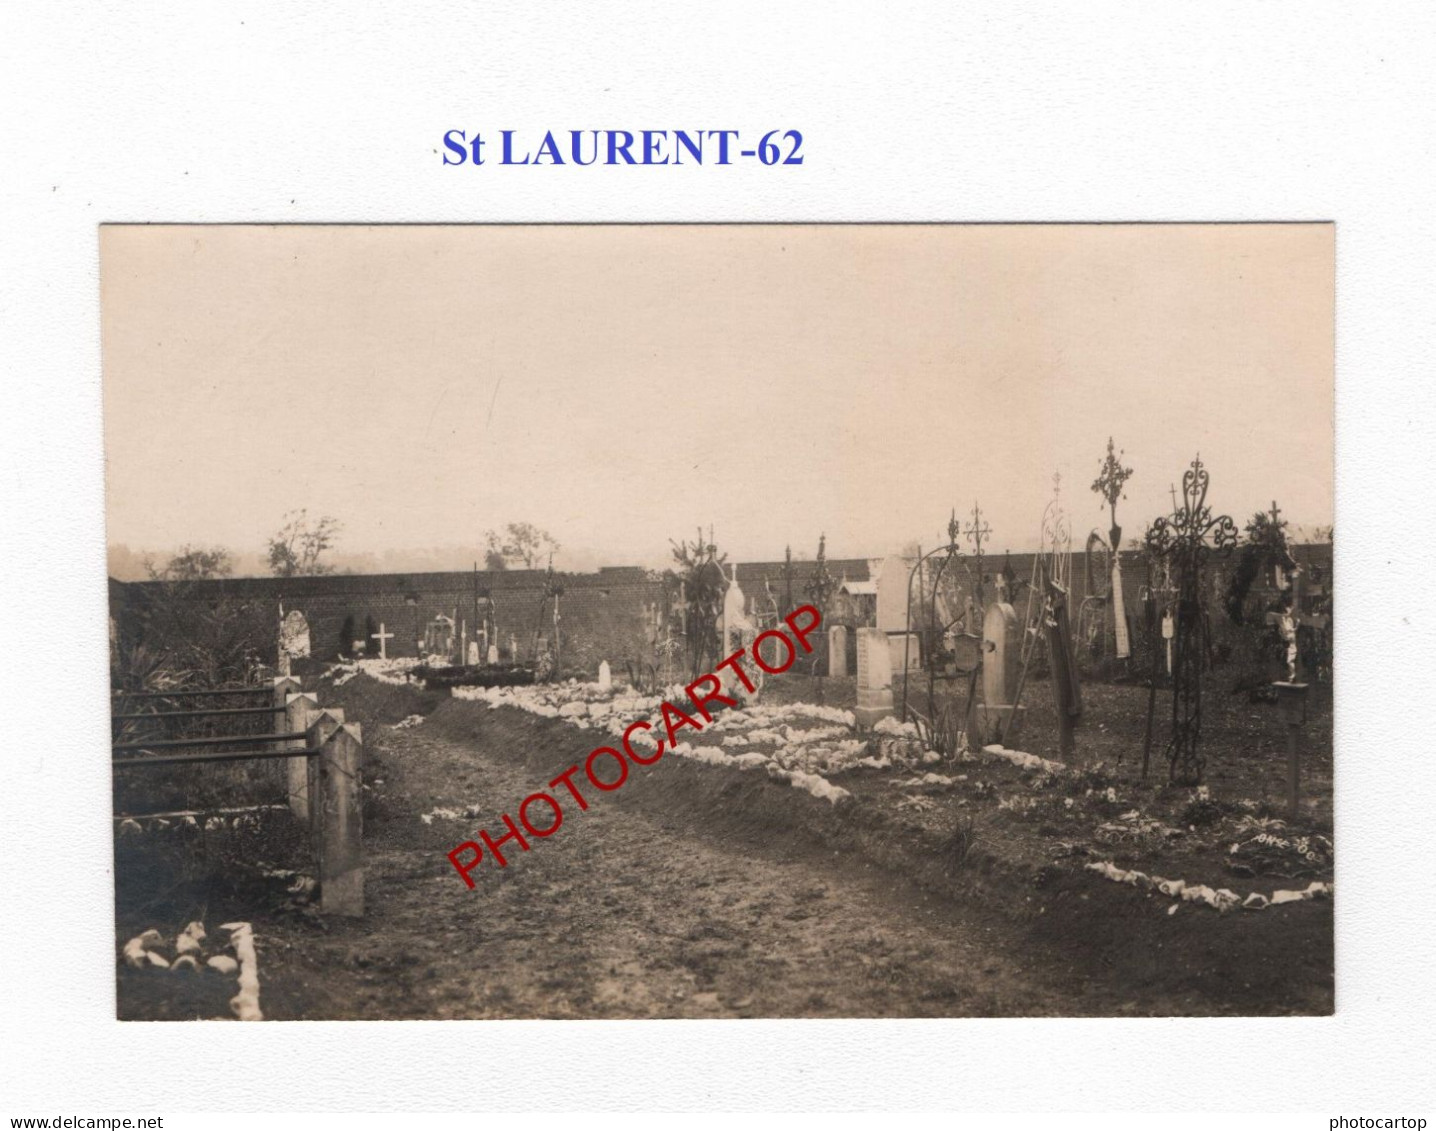 St LAURENT-62-Cimetiere-Tombes-CARTE PHOTO Allemande-GUERRE 14-18-1 WK-MILITARIA- - Cimetières Militaires